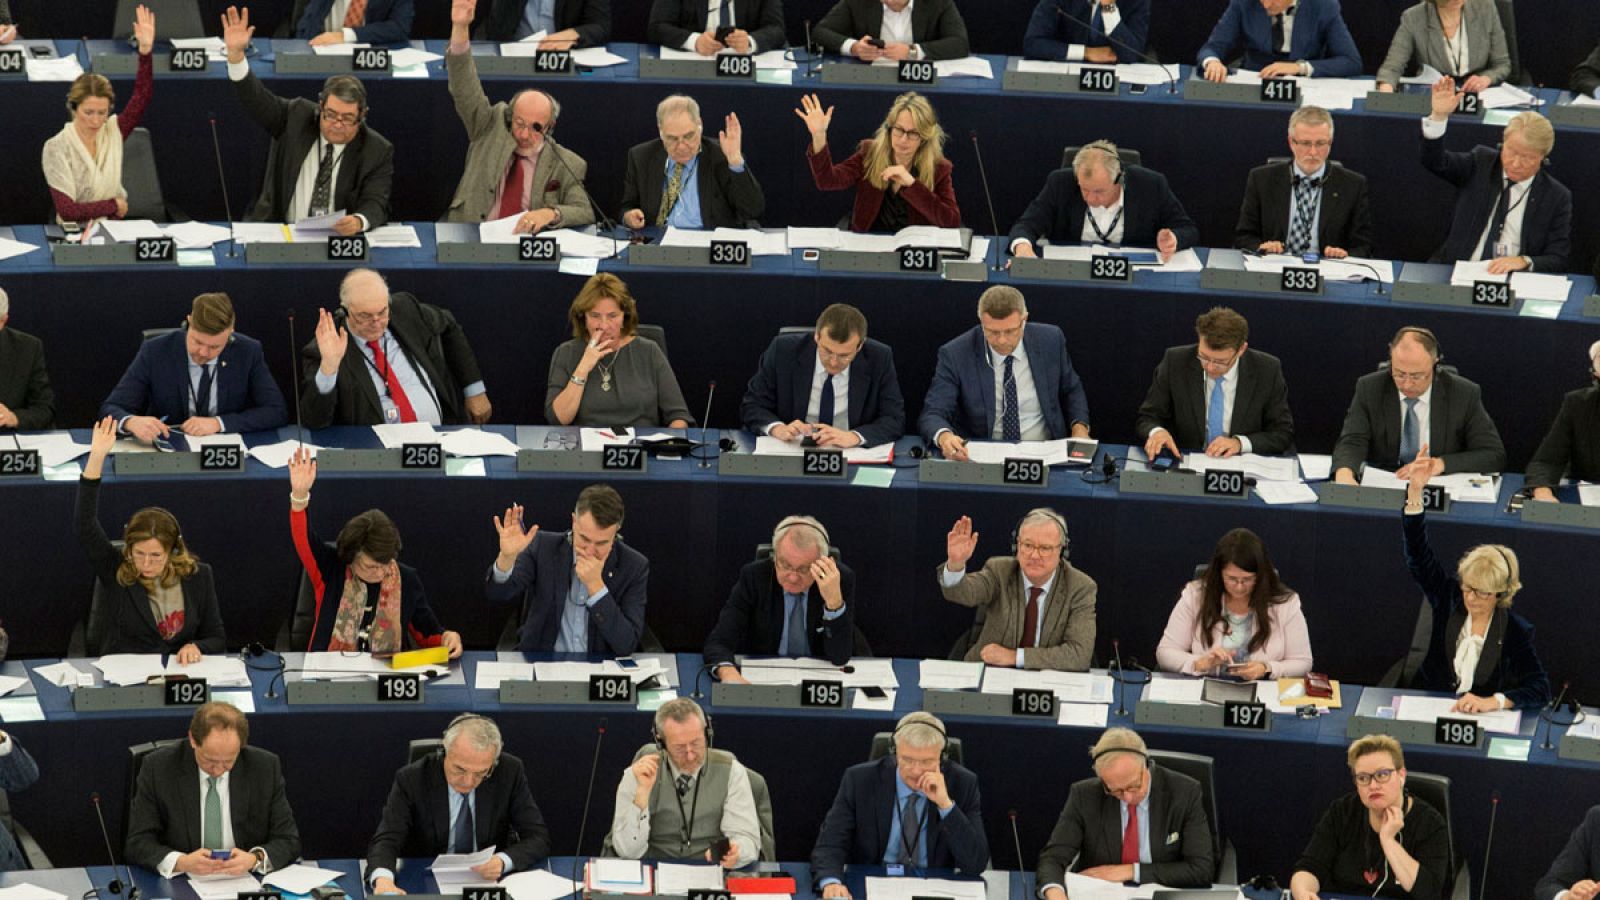 Vista general del hemiciclo del Parlamento Europeo